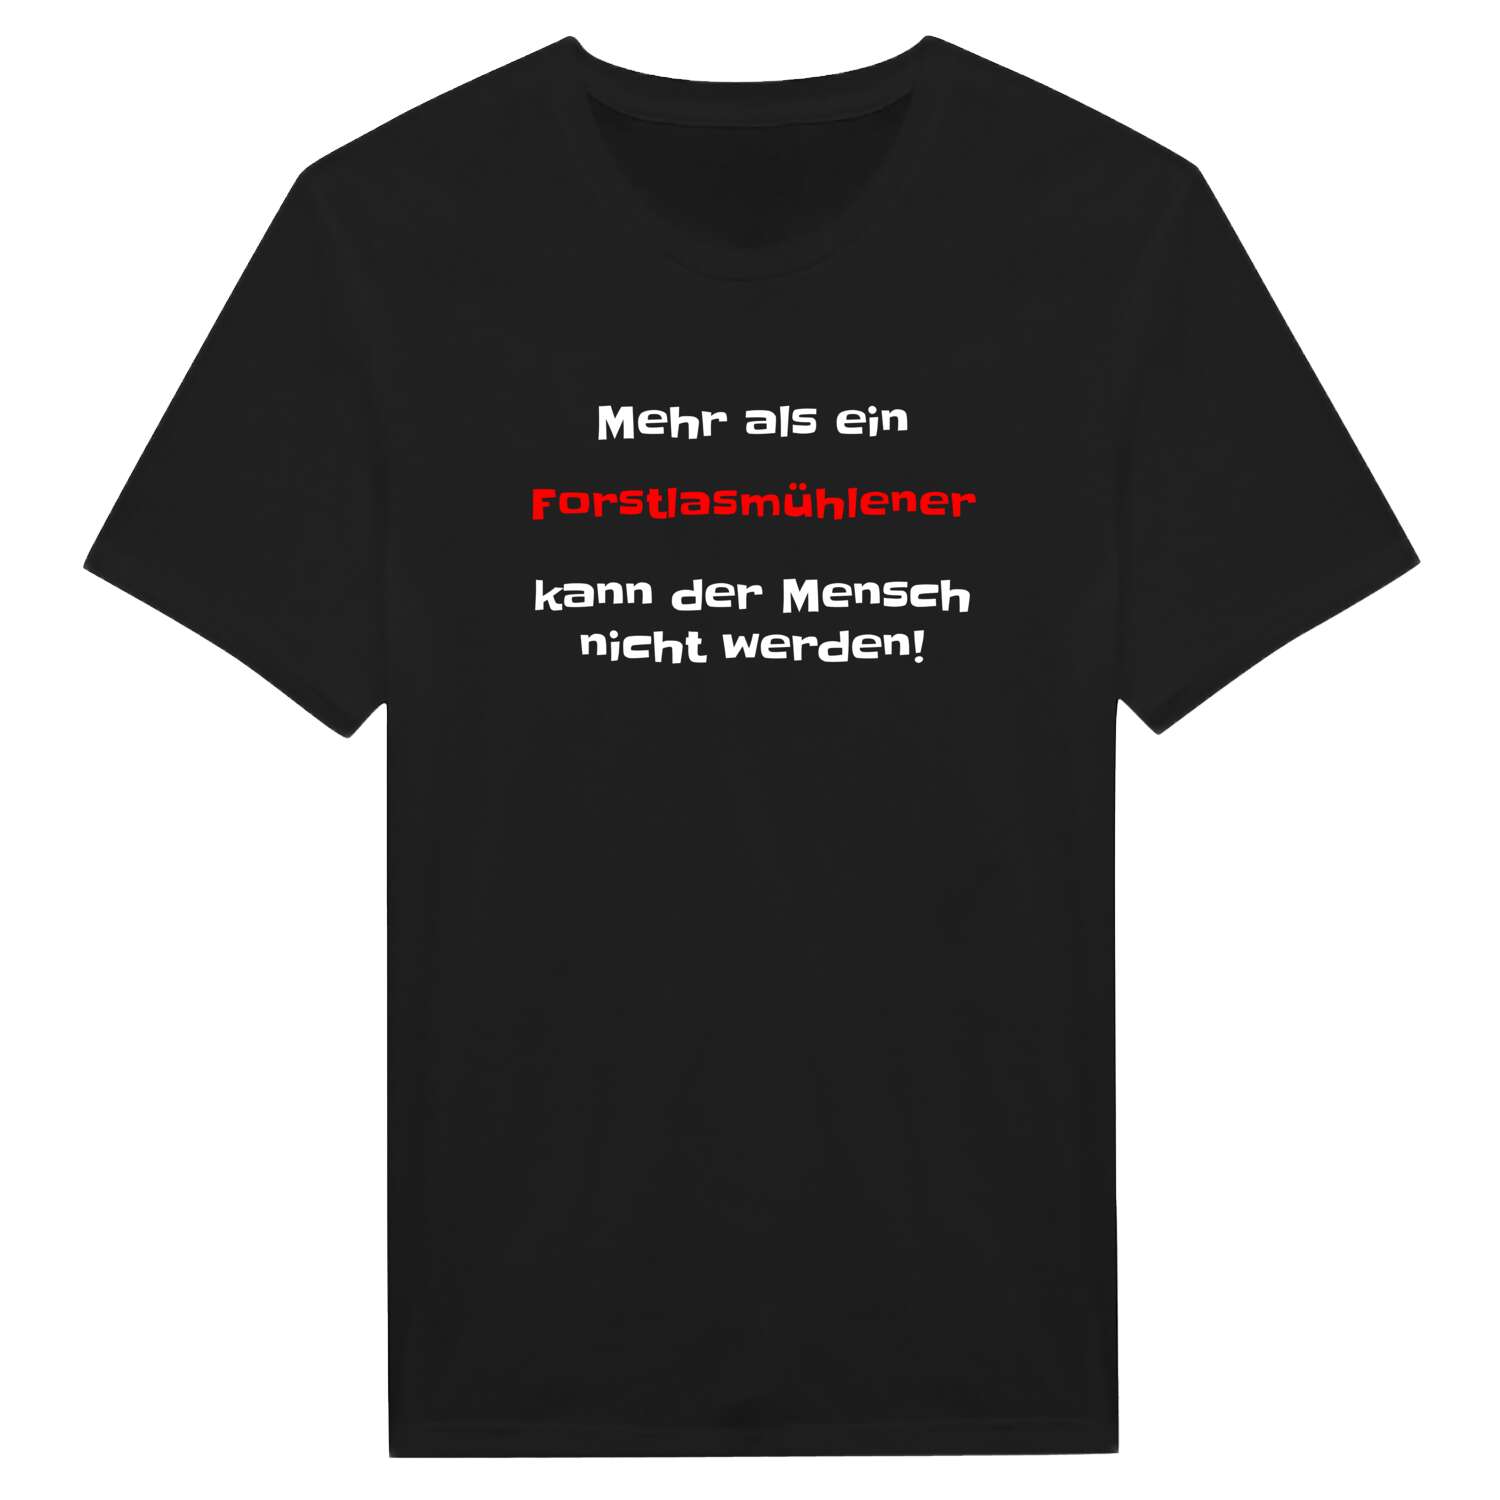 Forstlasmühle T-Shirt »Mehr als ein«